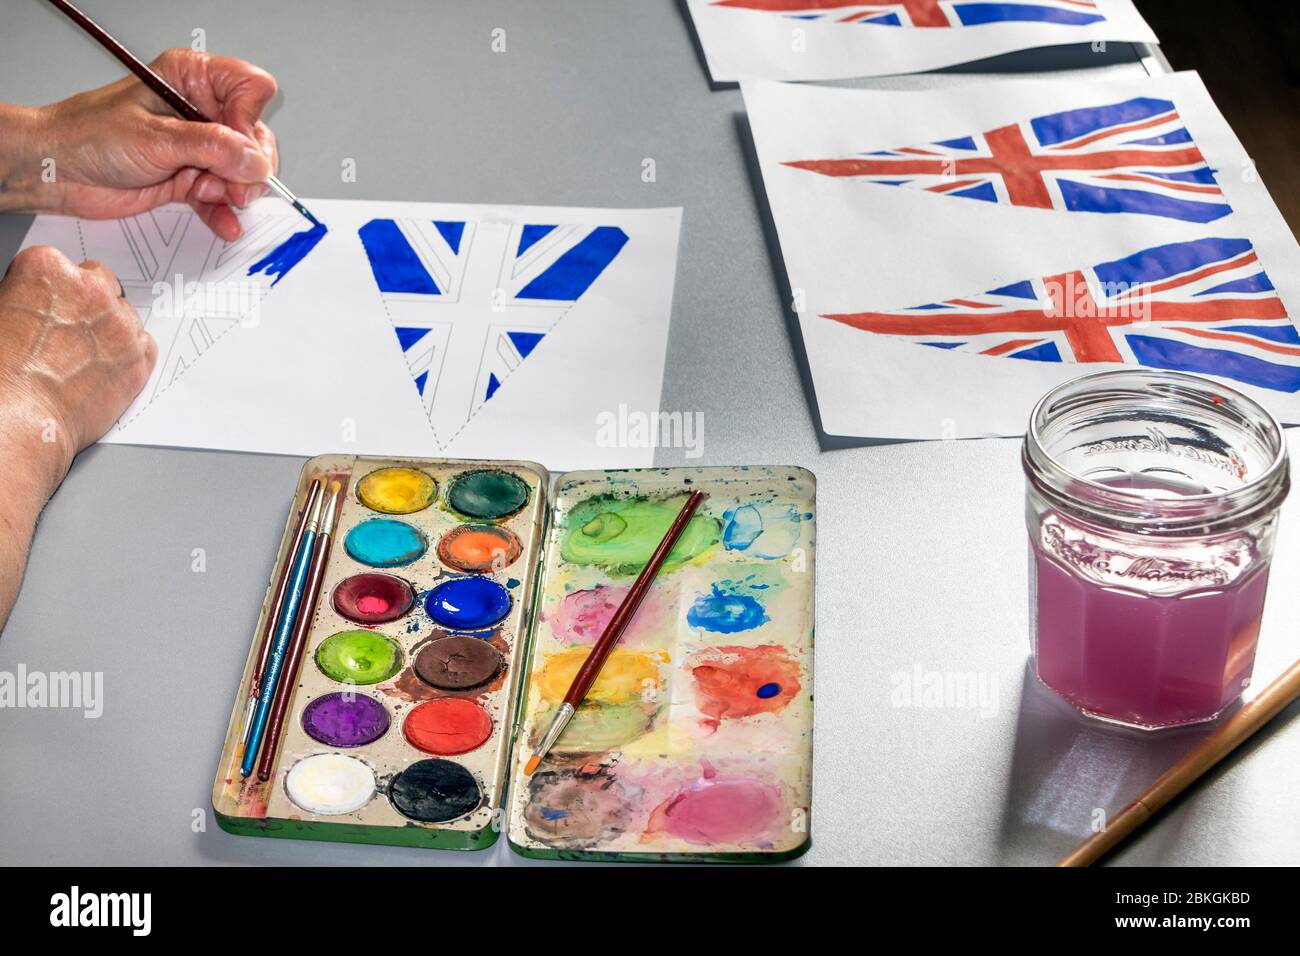 Femme Peinture 75ème anniversaire VE Day Flags, Royaume-Uni Banque D'Images